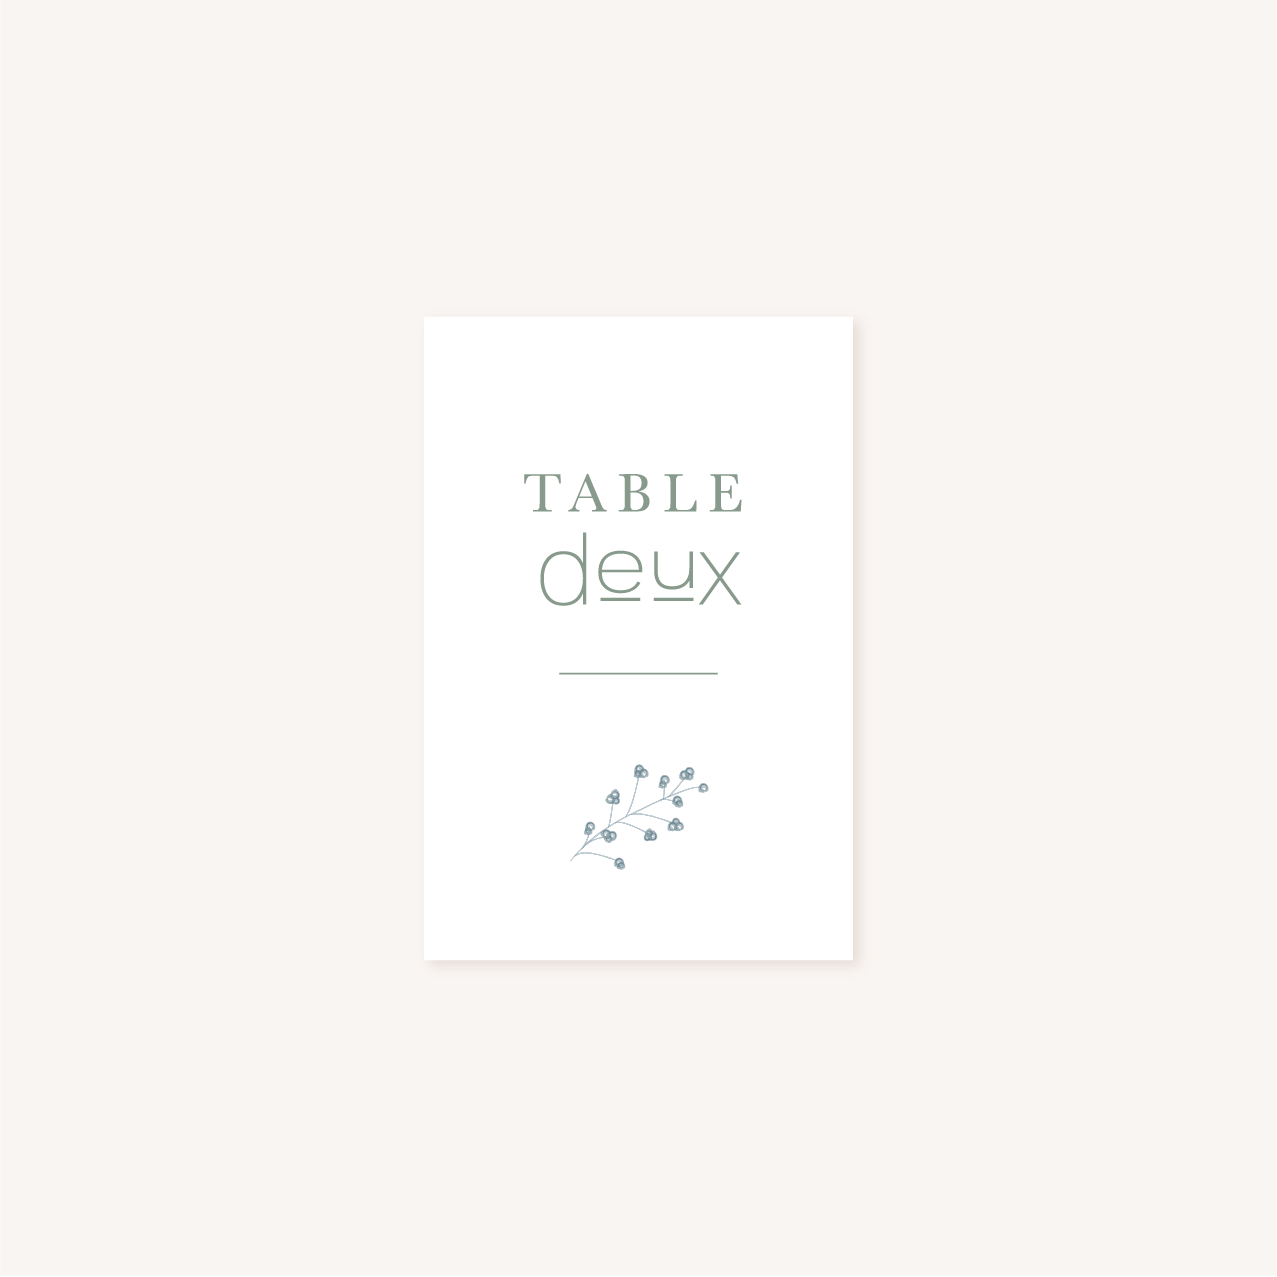 Mariage décoration papeterie table minimalist vert épuré